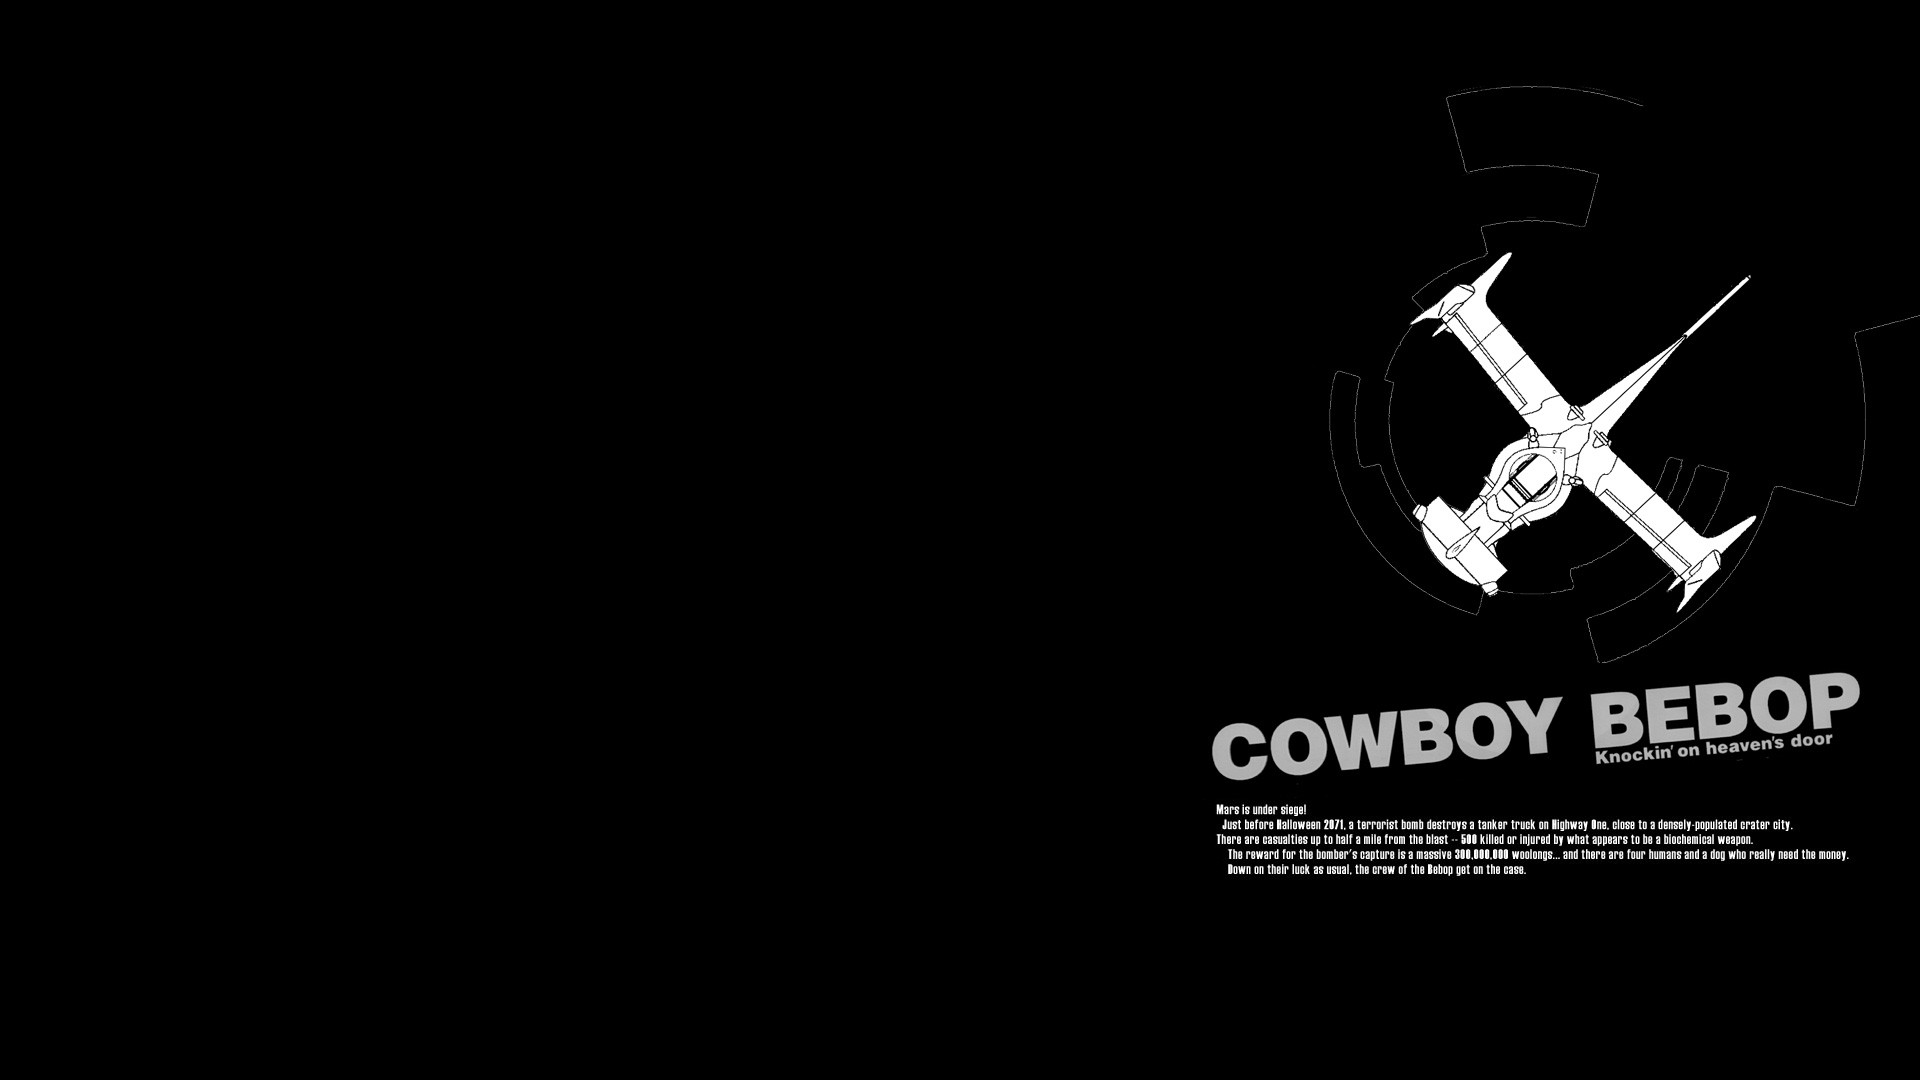 Cowboy Bebop HD Wallpaper 1920x1080 ID39710